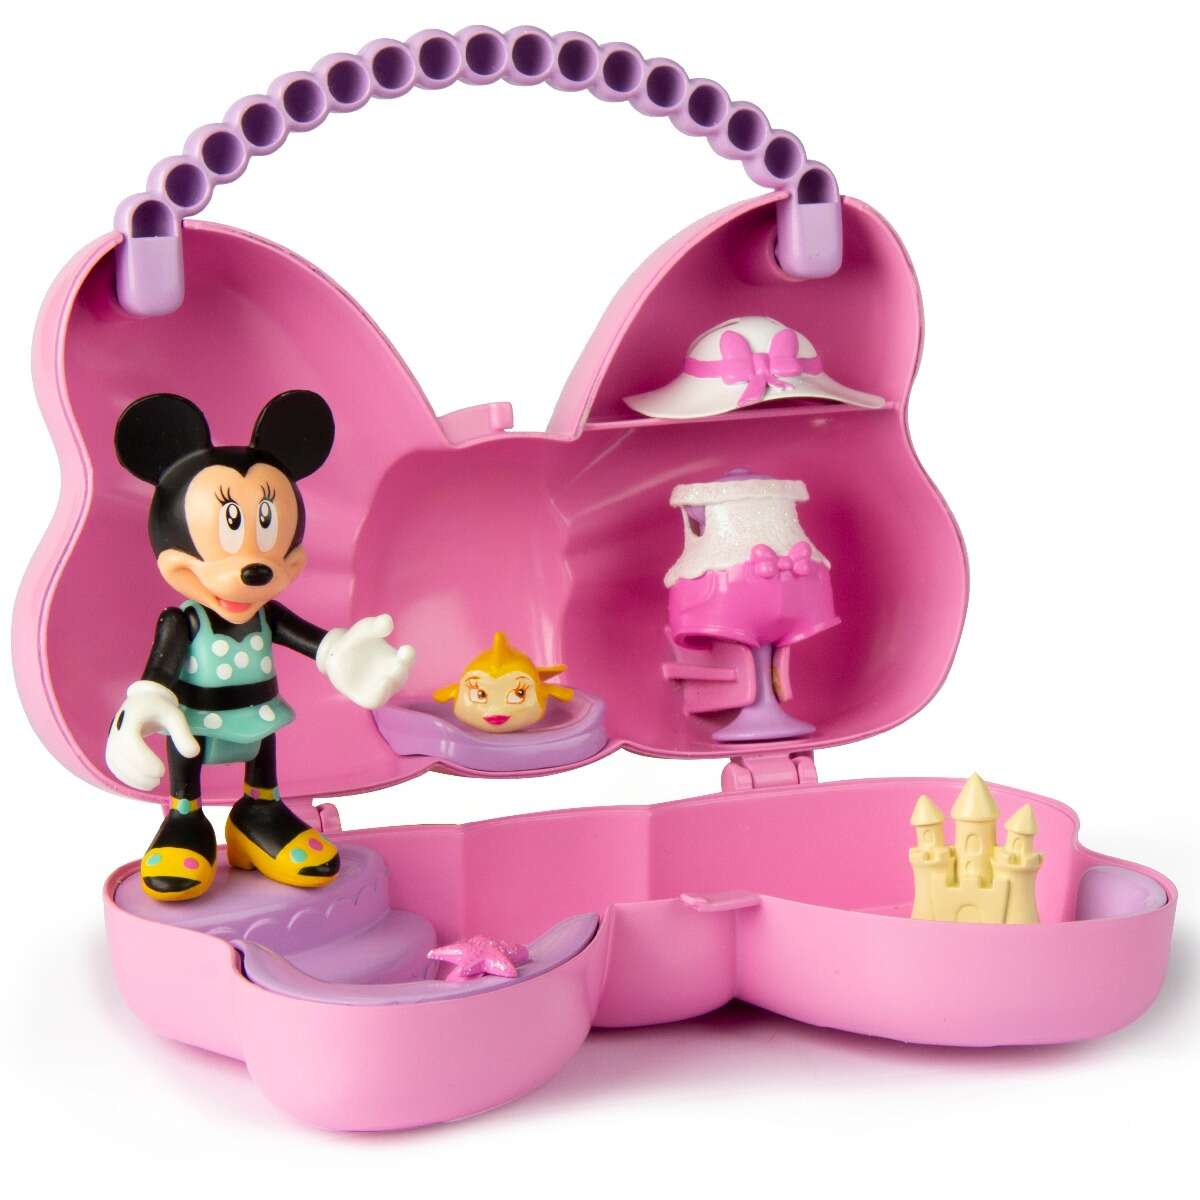 Set de joaca fundita cu figurine si accesorii, disney minnie mickey, roz deschis